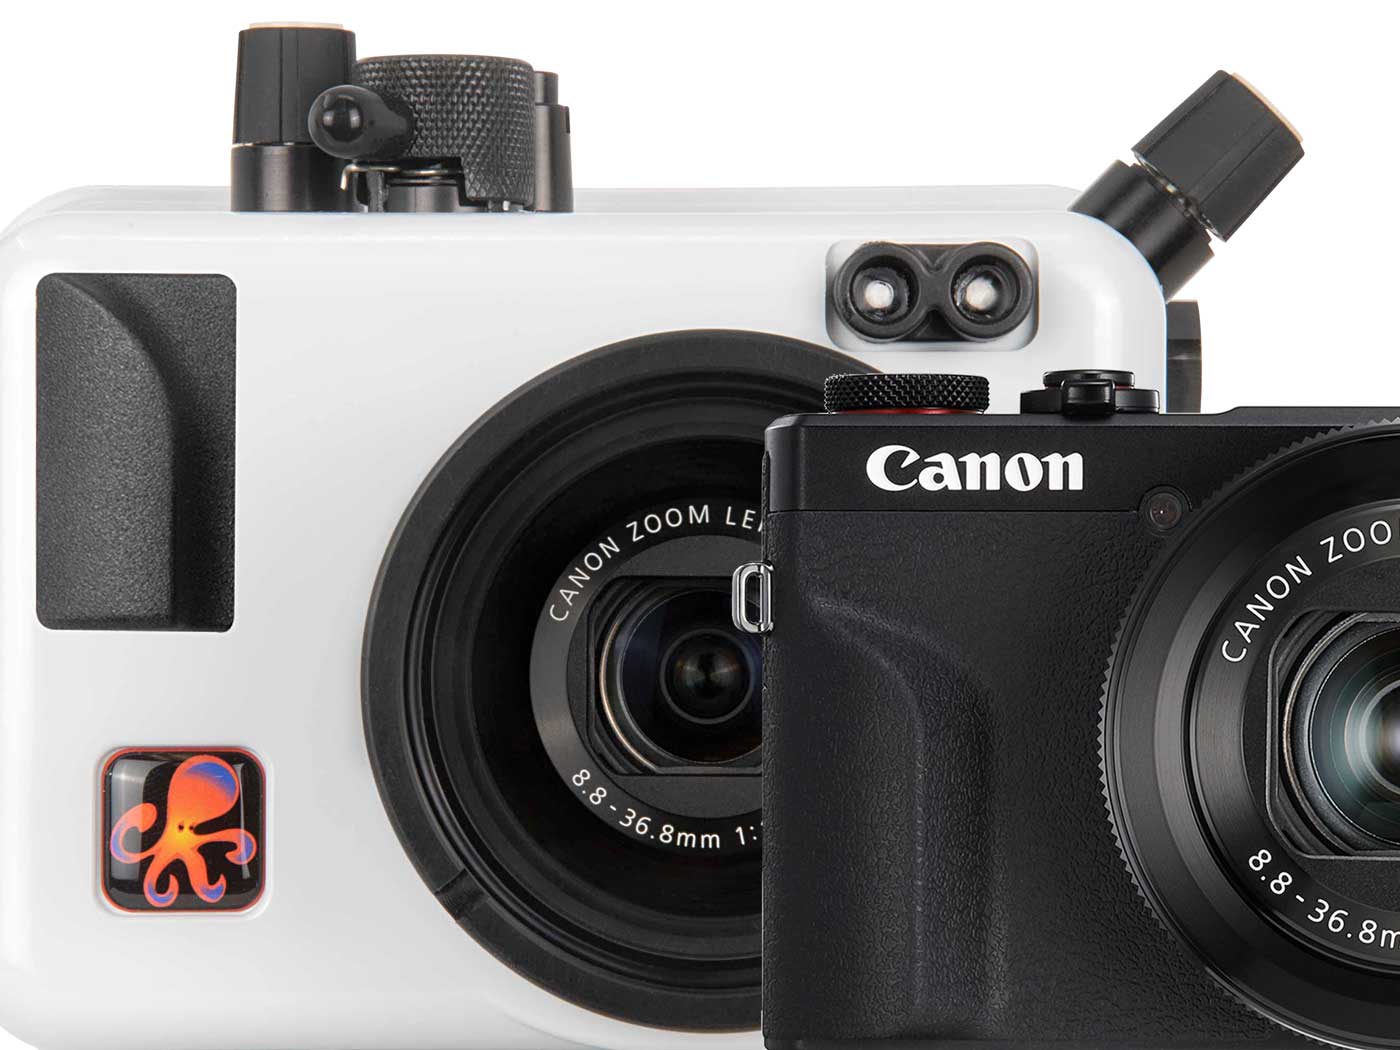 G7x Mark IICanon  Compact Reflex Camera